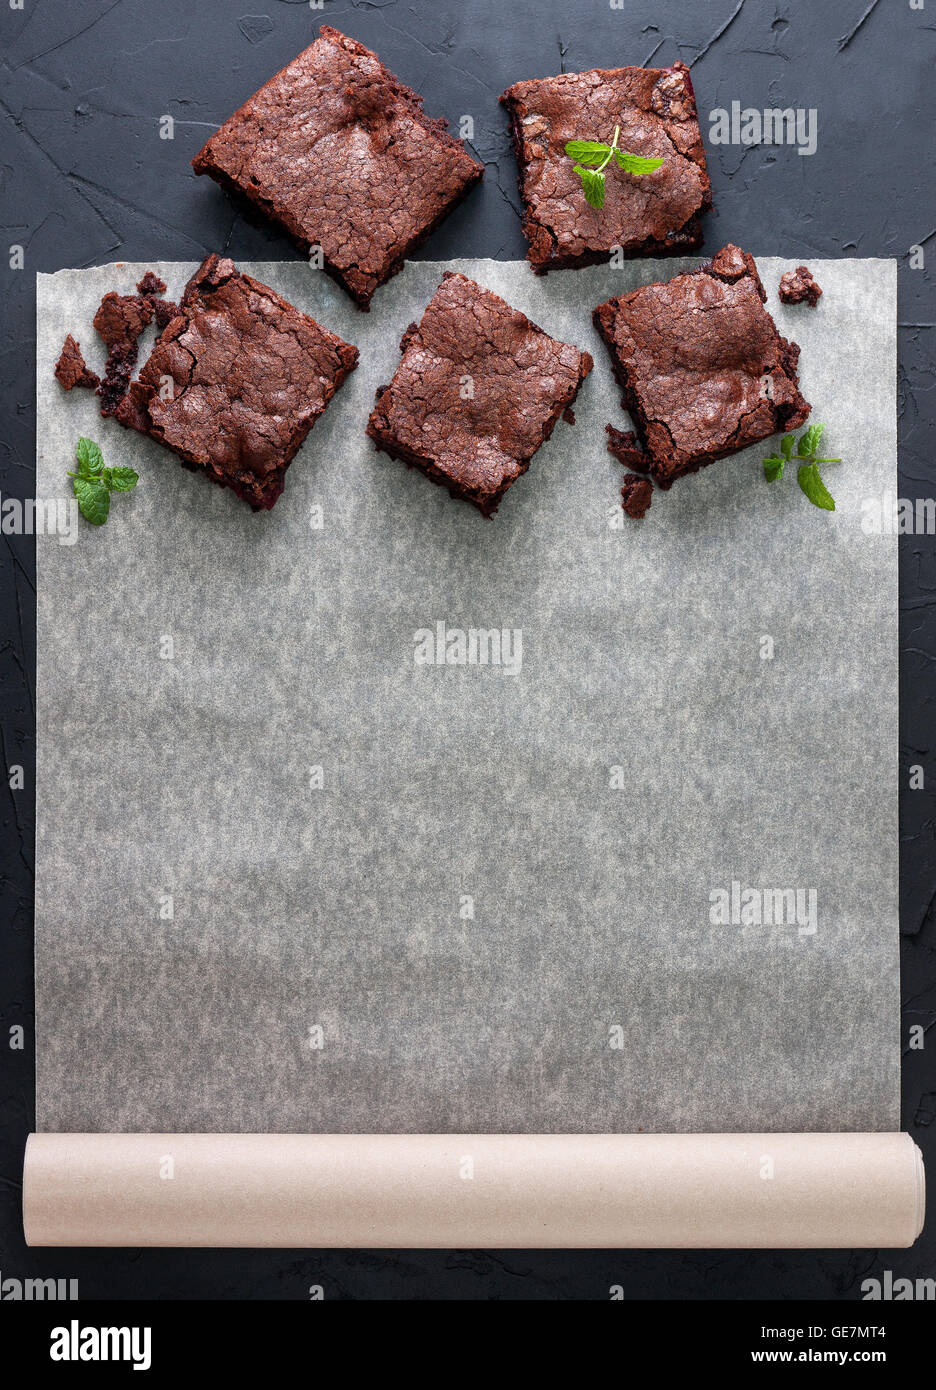 Quelques morceaux de chocolat sur du papier sulfurisé avec espace d'information (vue de dessus). arrière-plan foncé béton noir. Banque D'Images